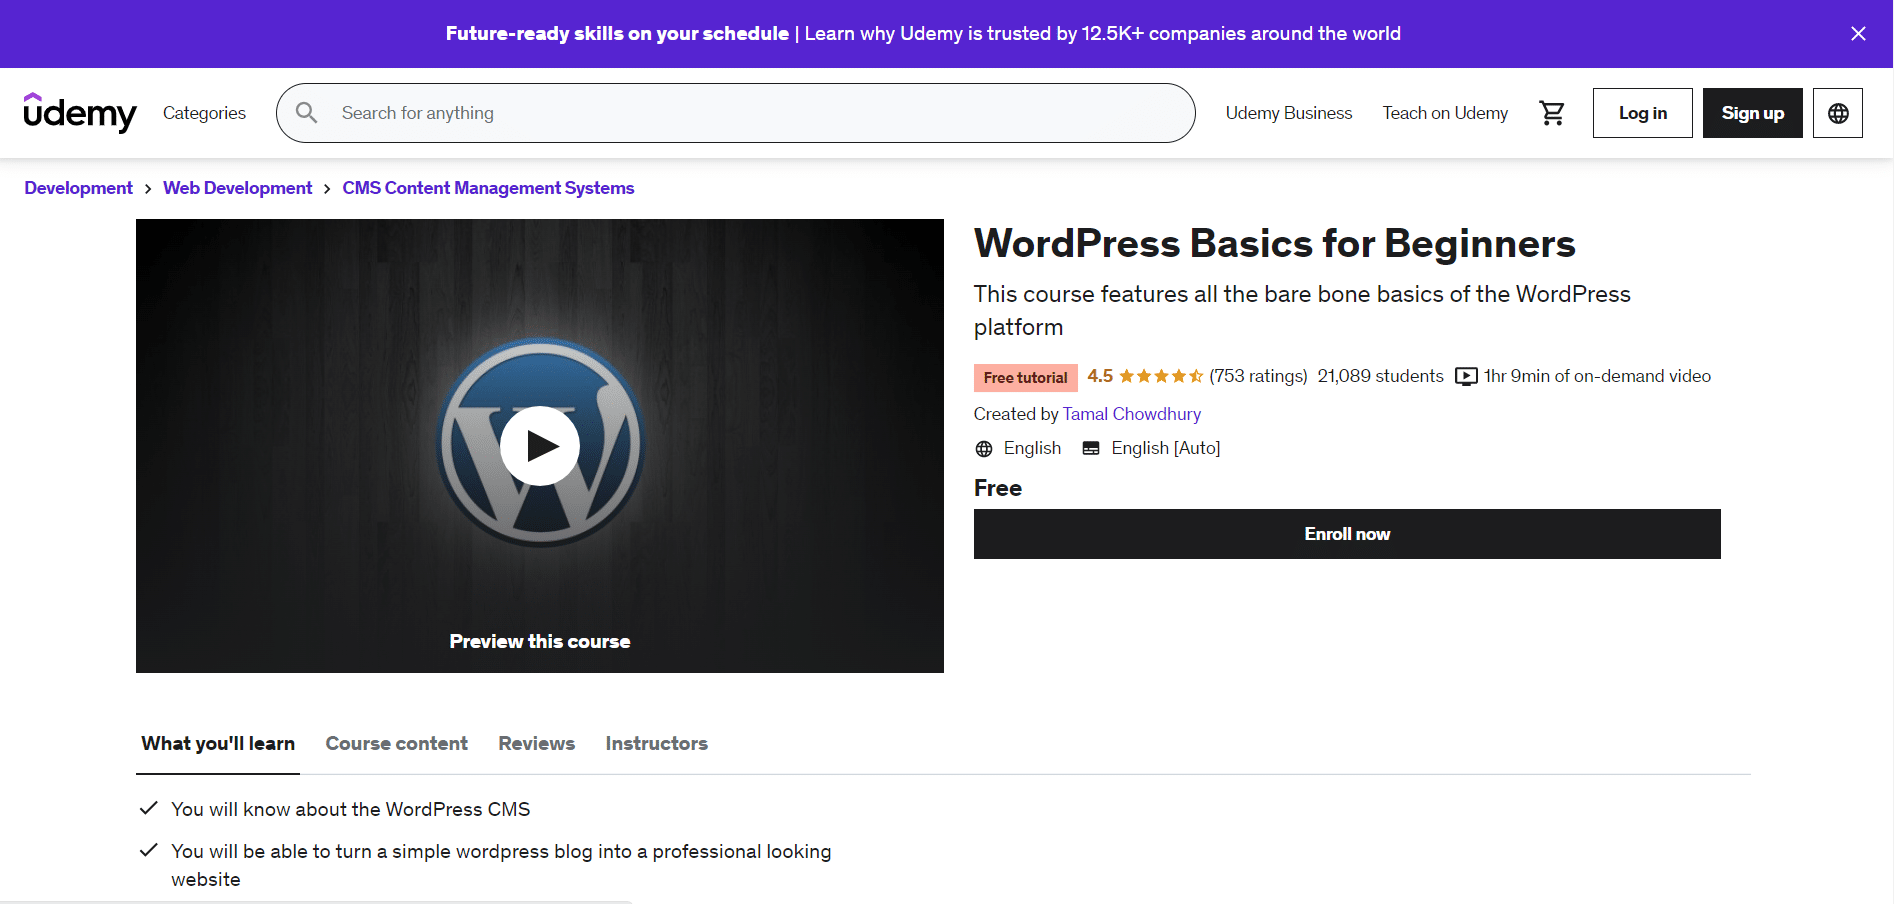 WordPress Basics for Beginners